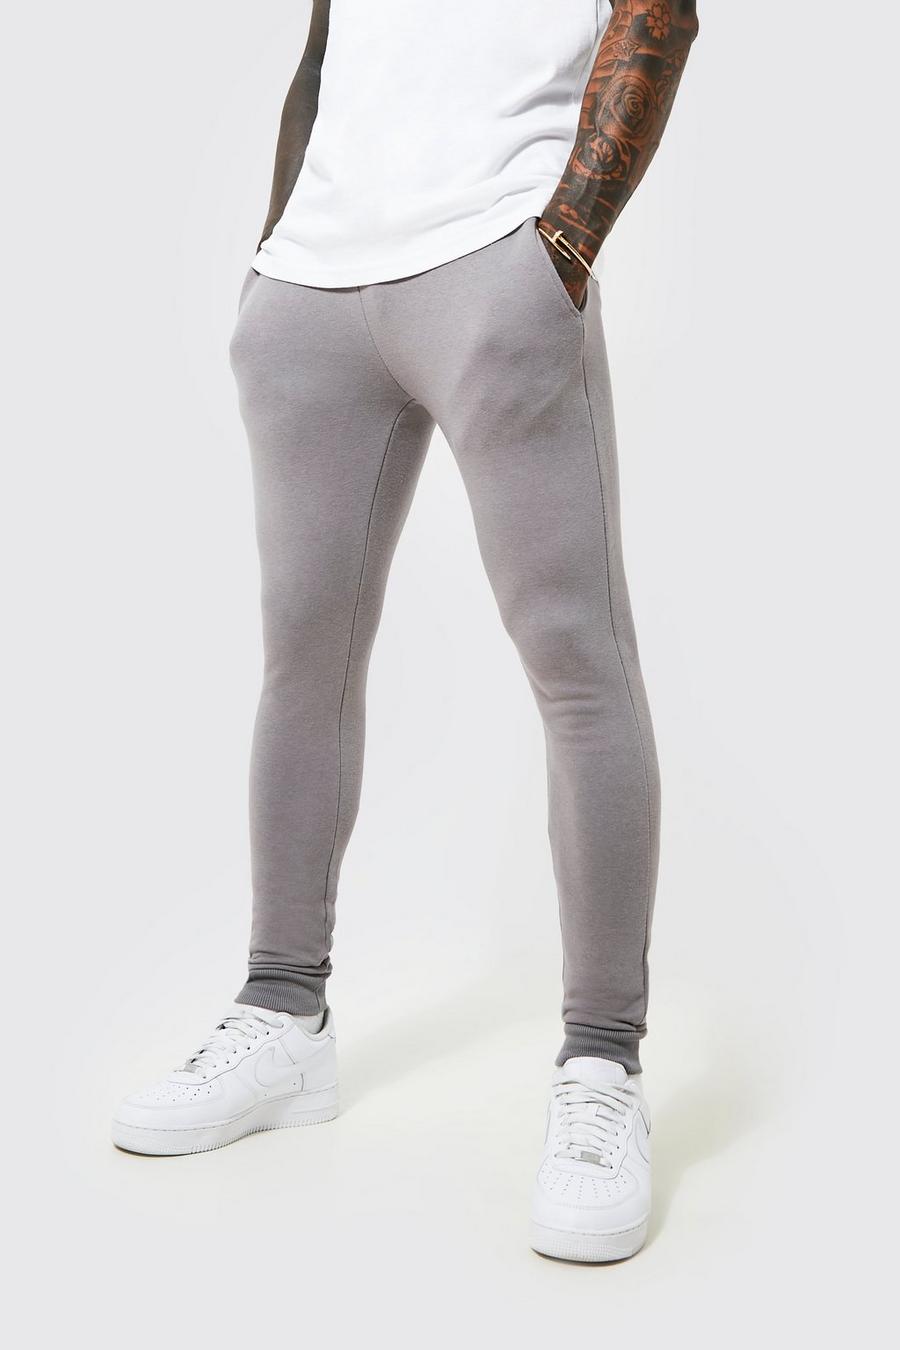 Pantaloni tuta Super Skinny Fit in cotone REEL, Charcoal gris